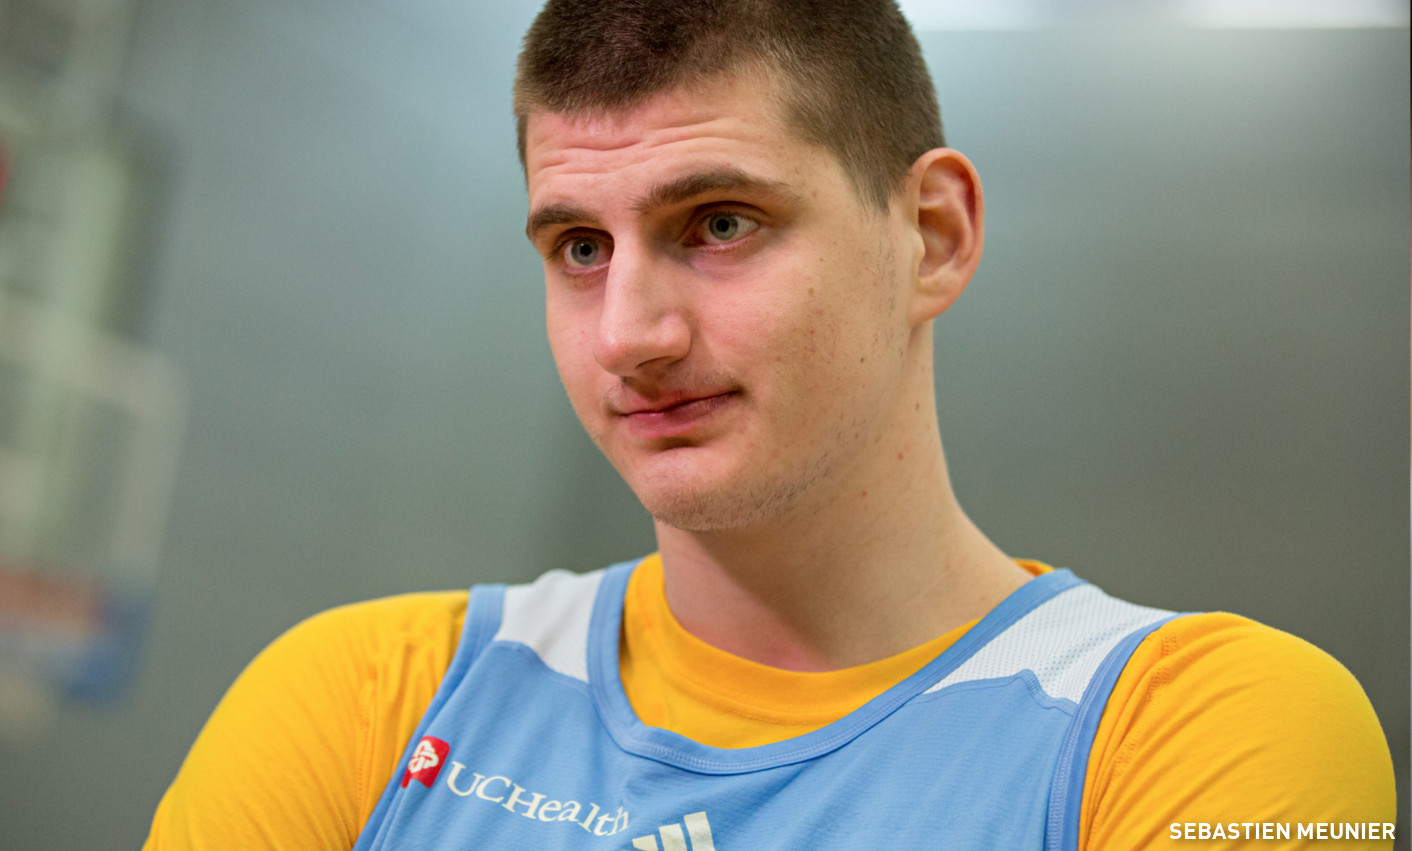 Encore un énorme match pour Nikola Jokic face aux Suns - BasketSession.com - Le ...1412 x 851